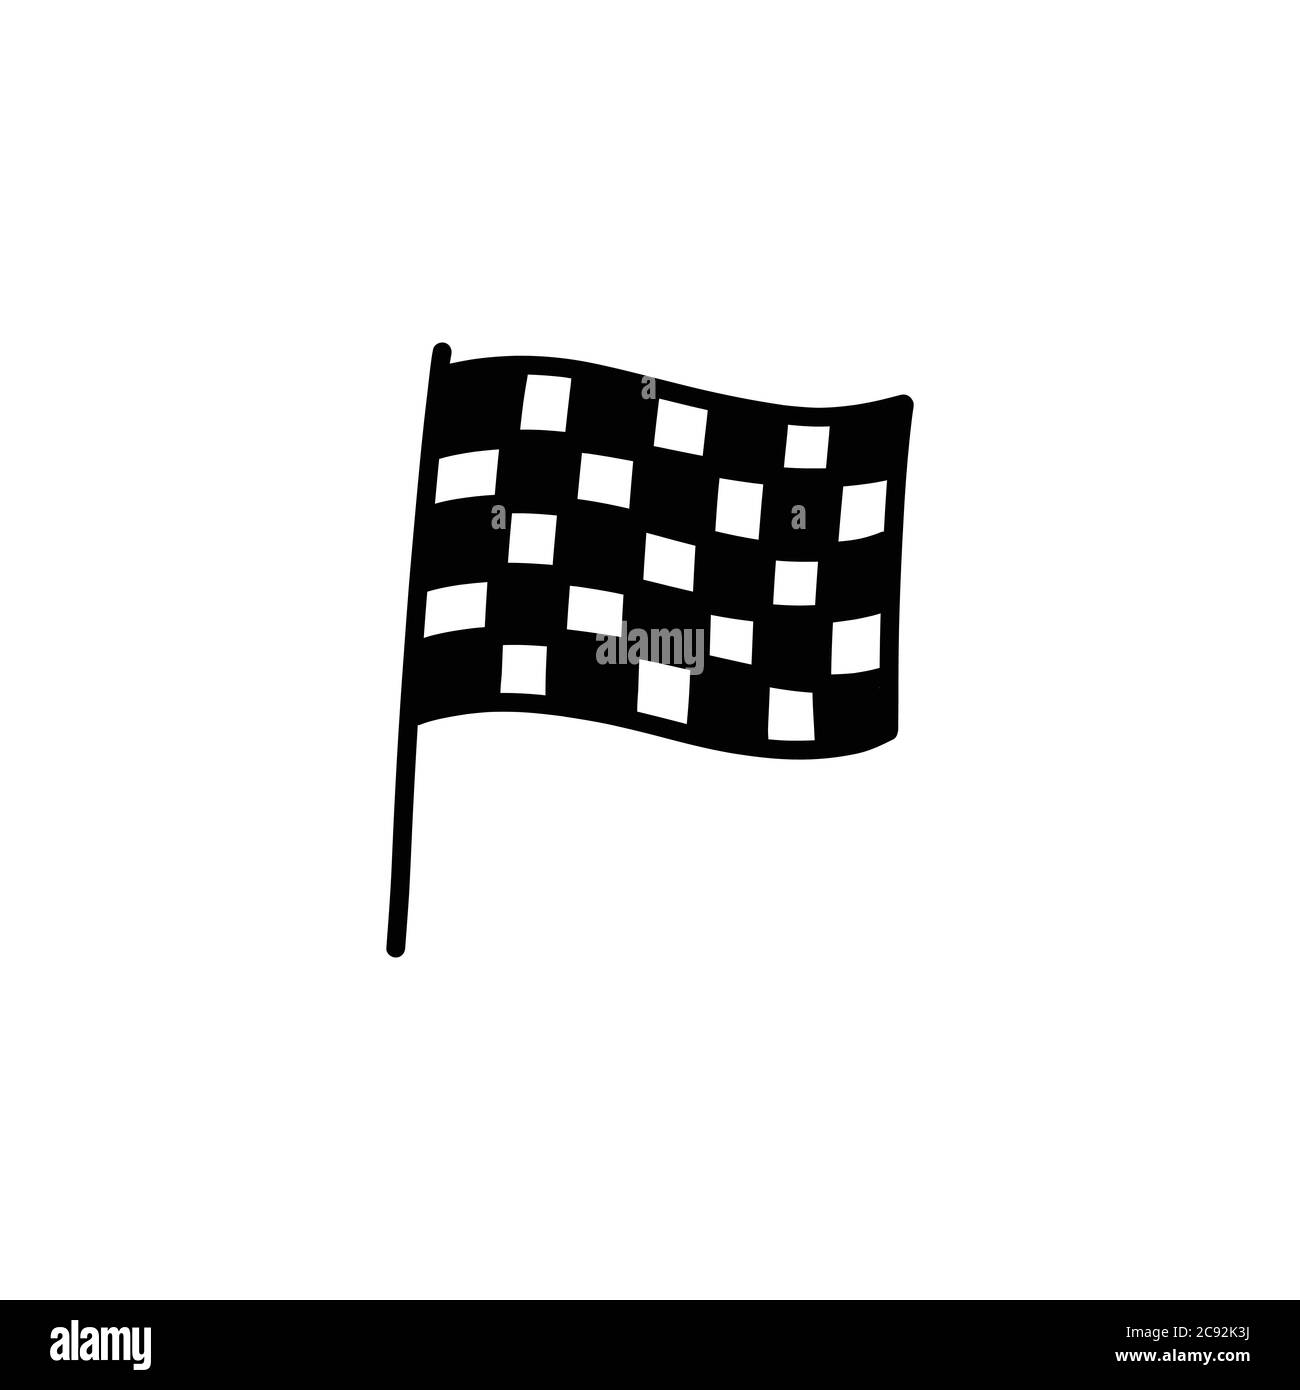 Finish flag Black and White Stock Photos & Images - Alamy